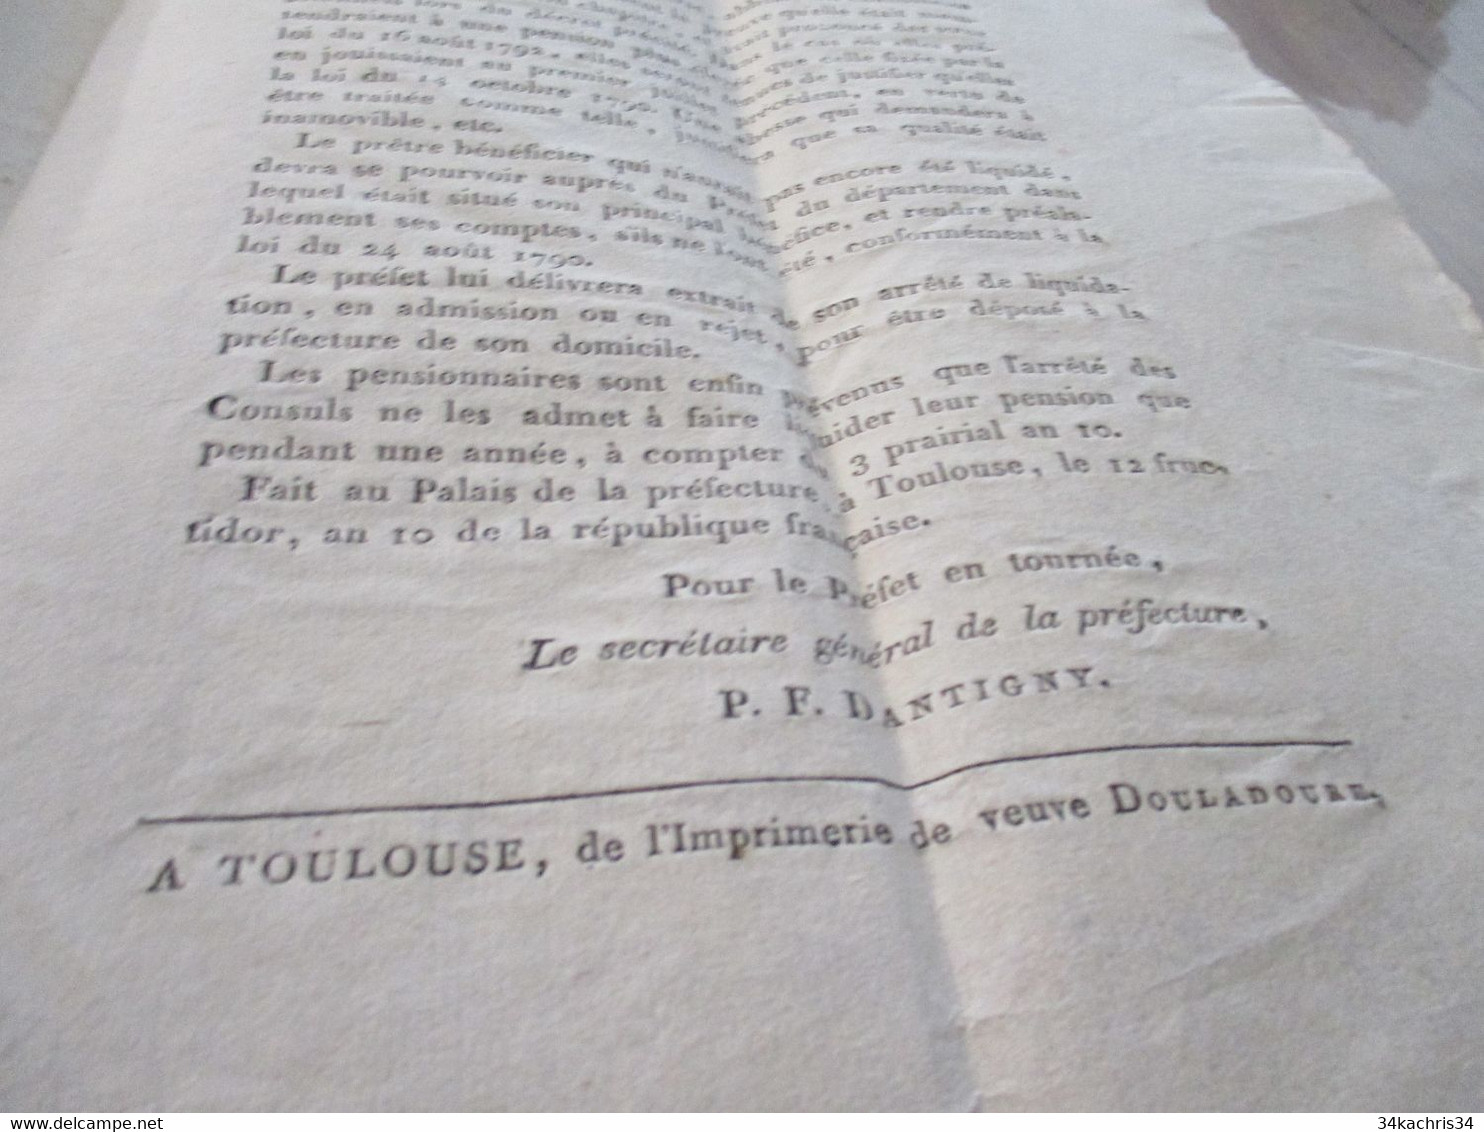 Révolution Haute Garonne Toulouse Avis 3 Prairial An X Pensions Des Ecclésiastiques Préfet Dantigny - Decrees & Laws